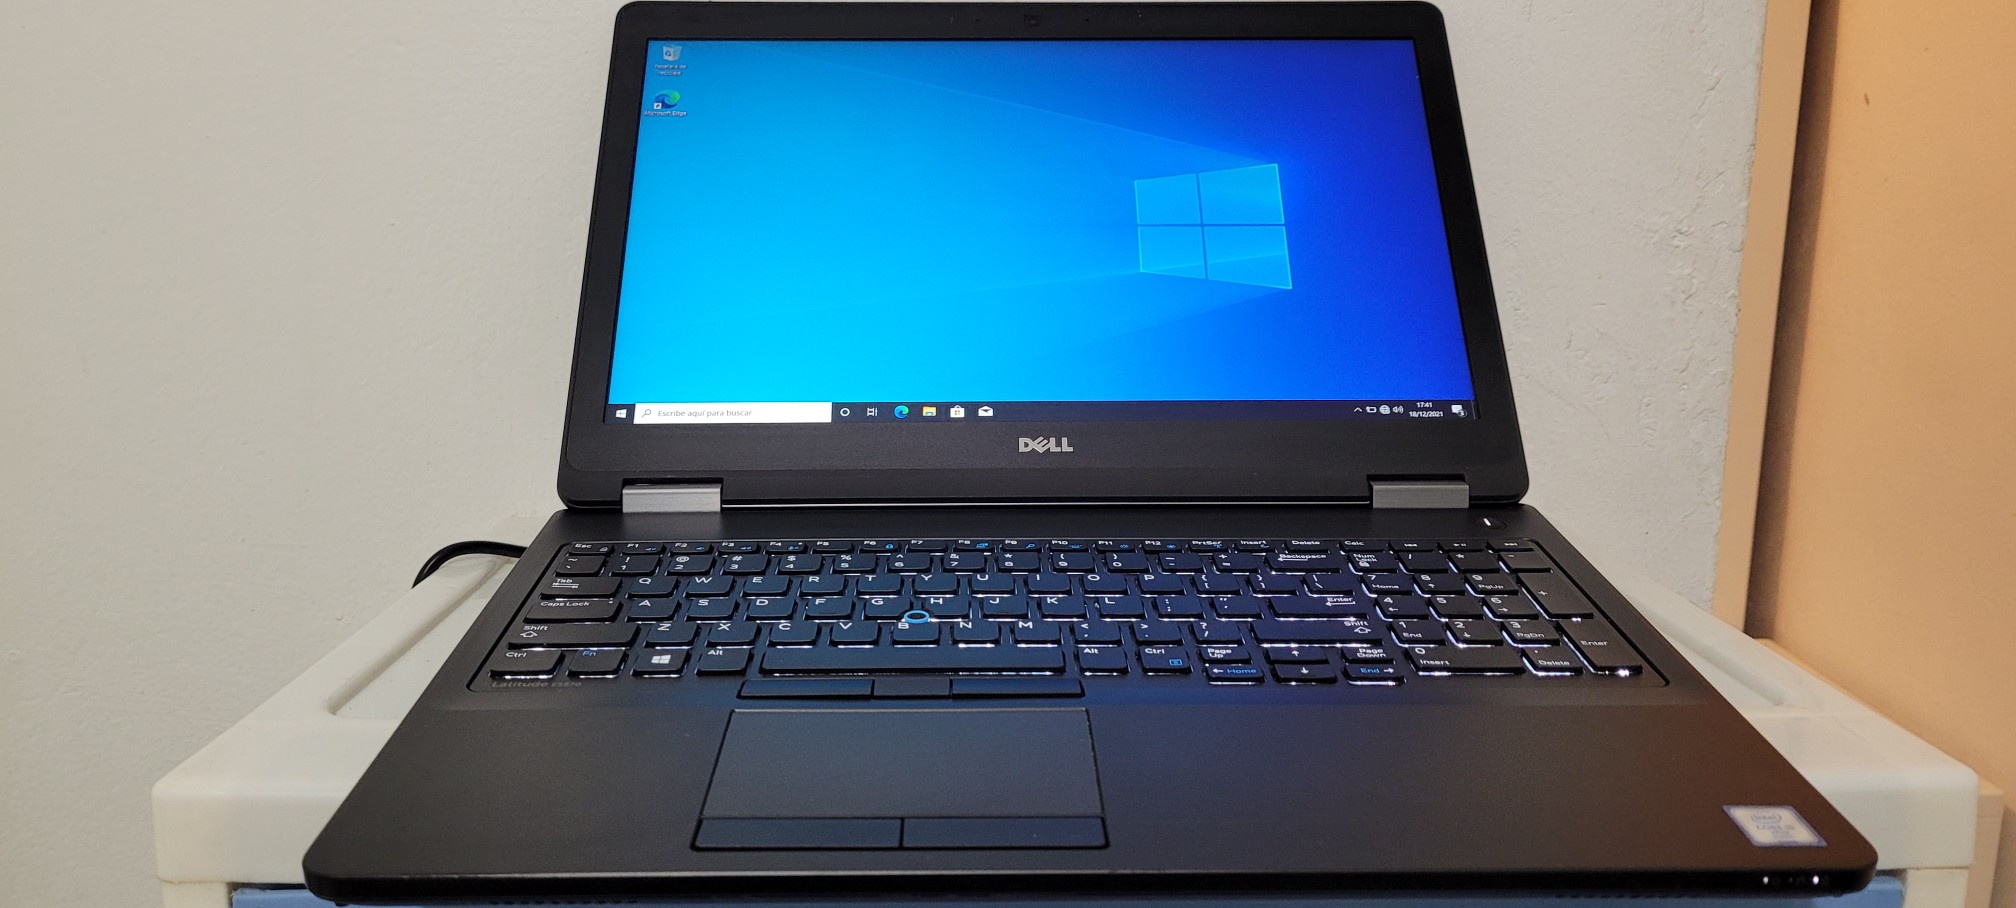 computadoras y laptops - Dell 5570 17 Pulg Core i5 6ta Ram 8gb ddr4 Disco 500gb teclado iluminado 0